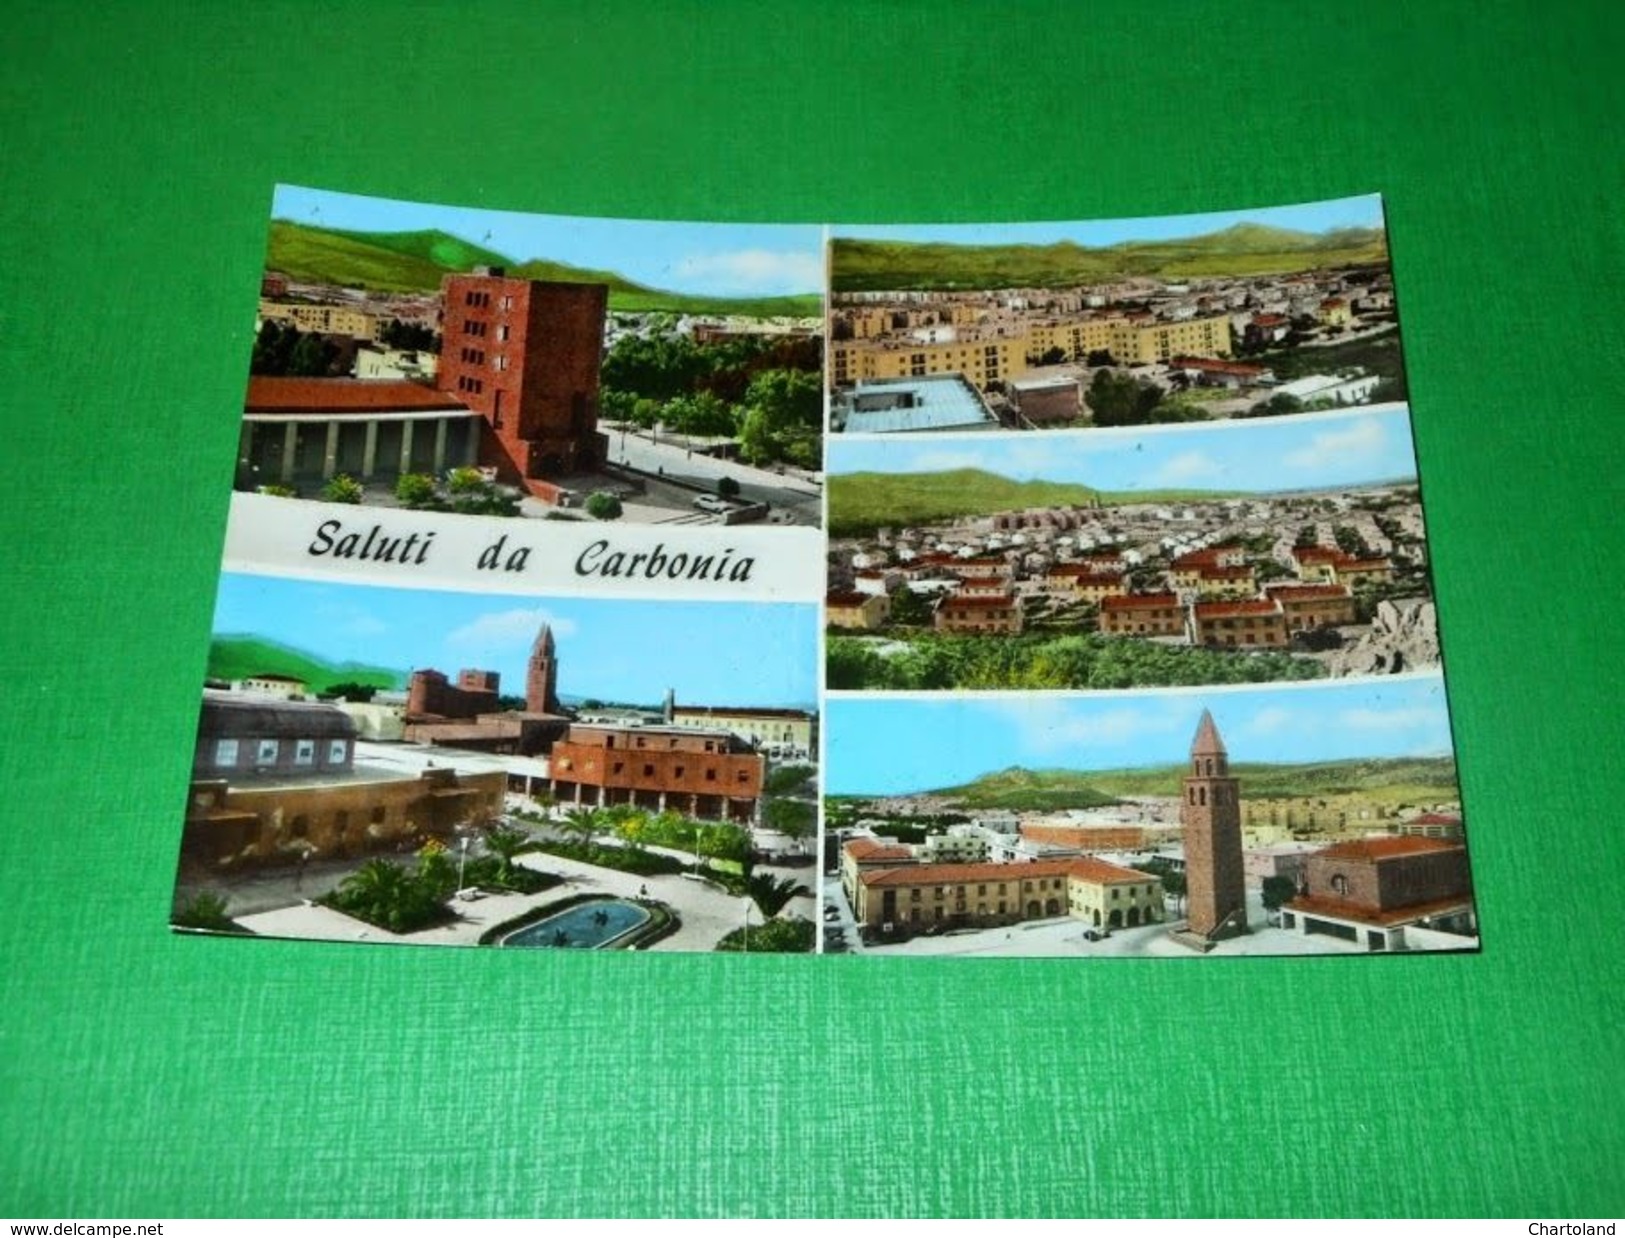 Cartolina Saluti Da Carbonia - Vedute Diverse 1960 Ca #2 - Cagliari